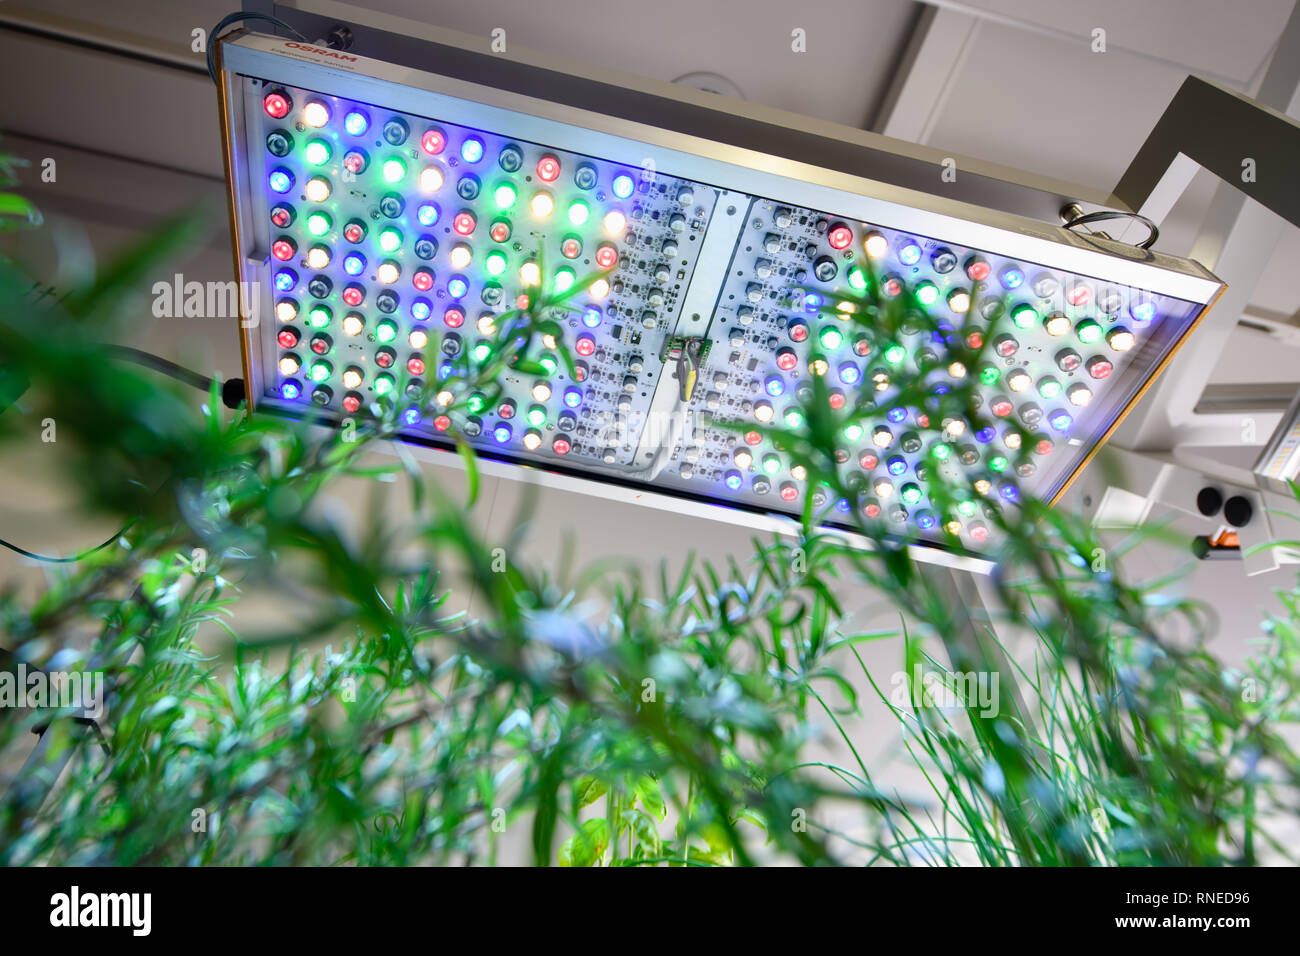 11 février 2019, Bavaria, Munich : une lampe à LED smart lumière végétale peut être vu au-dessus d'une plante dans un magasin d'exposition à l'administration centrale de Osram. La technologie d'éclairage, ce qui peut générer d'onde optimisée pour le développement des plantes, peuvent être utilisés, par exemple, dans des fermes verticales et les serres. Photo : Matthias Balk/dpa Banque D'Images